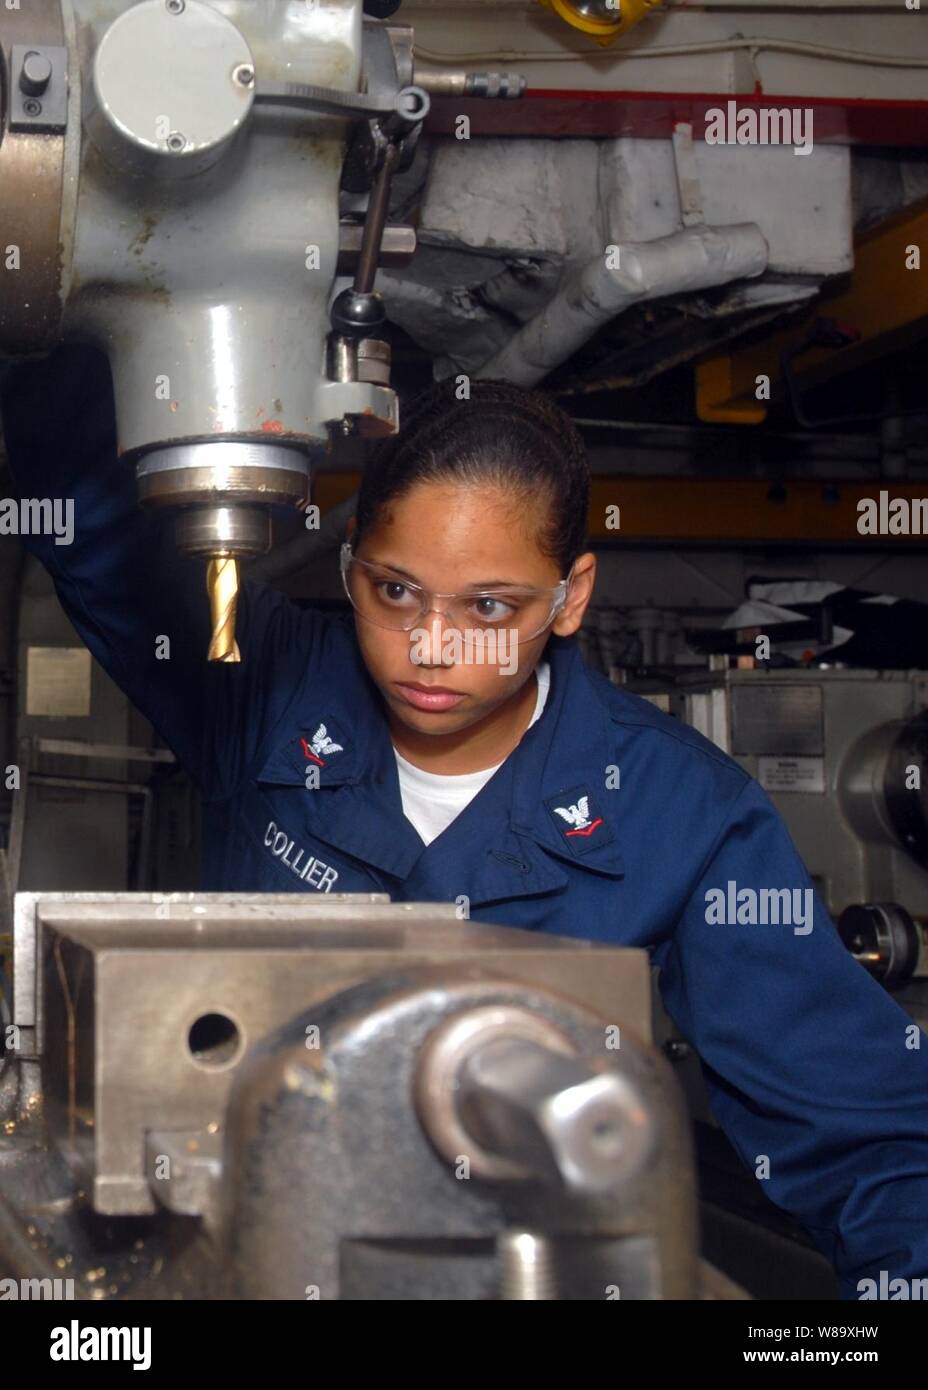 Stati Uniti Navy Petty Officer di terza classe Valerie Collier esegue le operazioni di manutenzione su una macchina di fresatura nel negozio di macchinari a bordo dell'assalto anfibio nave USS Essex (LHD-2) nel Mar Cinese orientale il 17 giugno 2009. Foto Stock